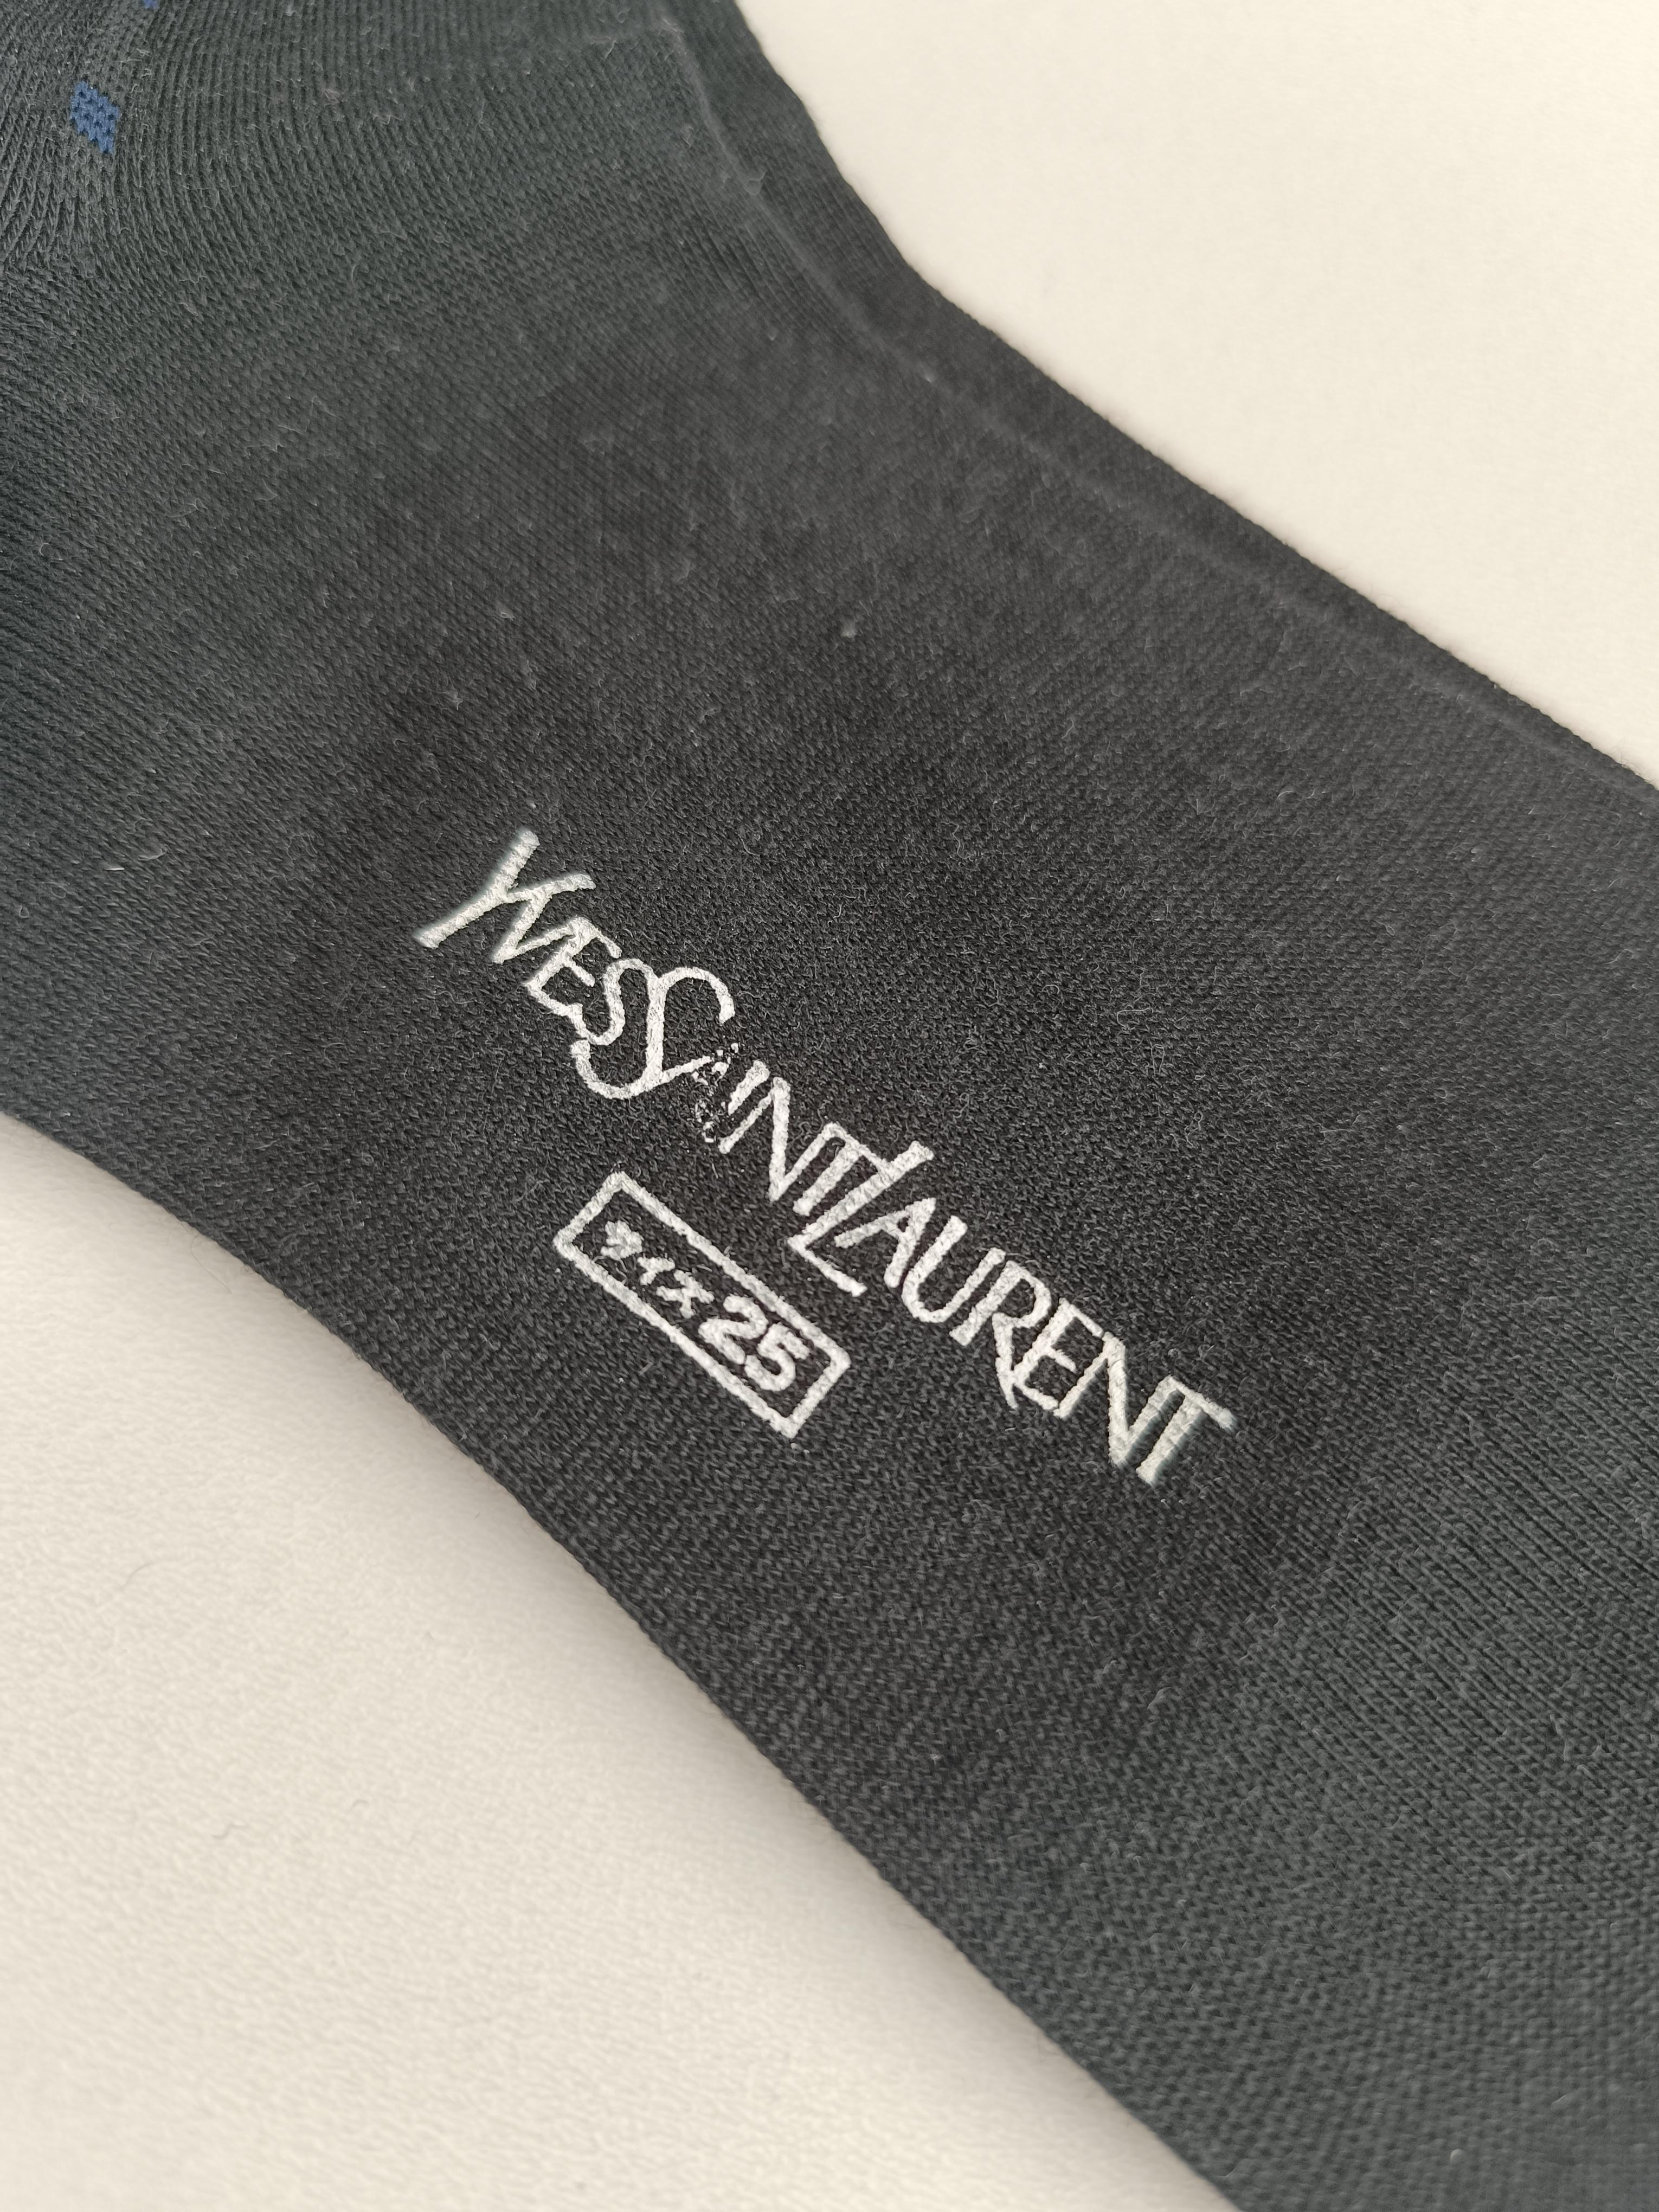 Authentic Yves Saint Laurent Vintage Men’s Socks For Sale 3